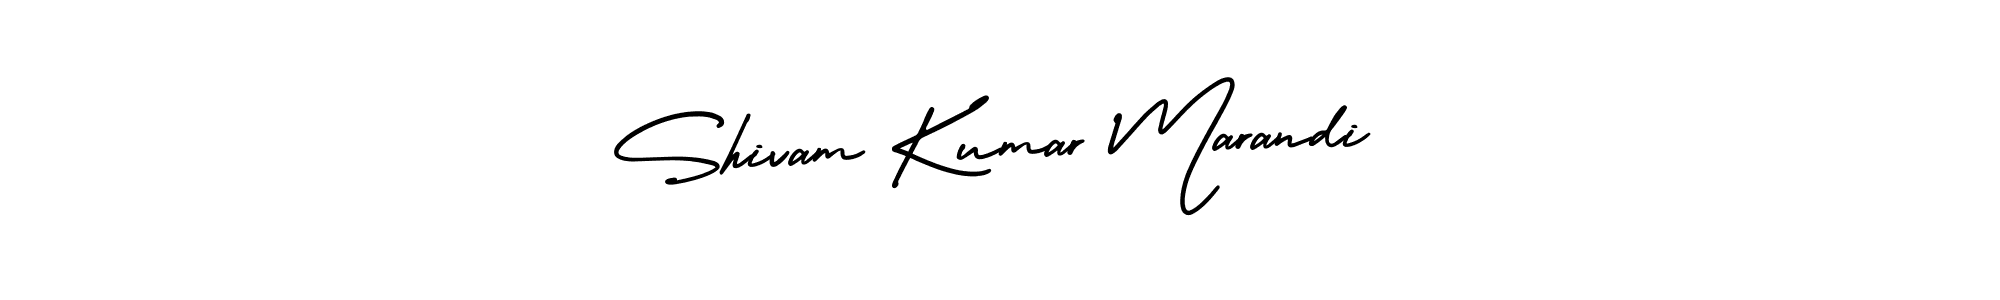 Best and Professional Signature Style for Shivam Kumar Marandi. AmerikaSignatureDemo-Regular Best Signature Style Collection. Shivam Kumar Marandi signature style 3 images and pictures png